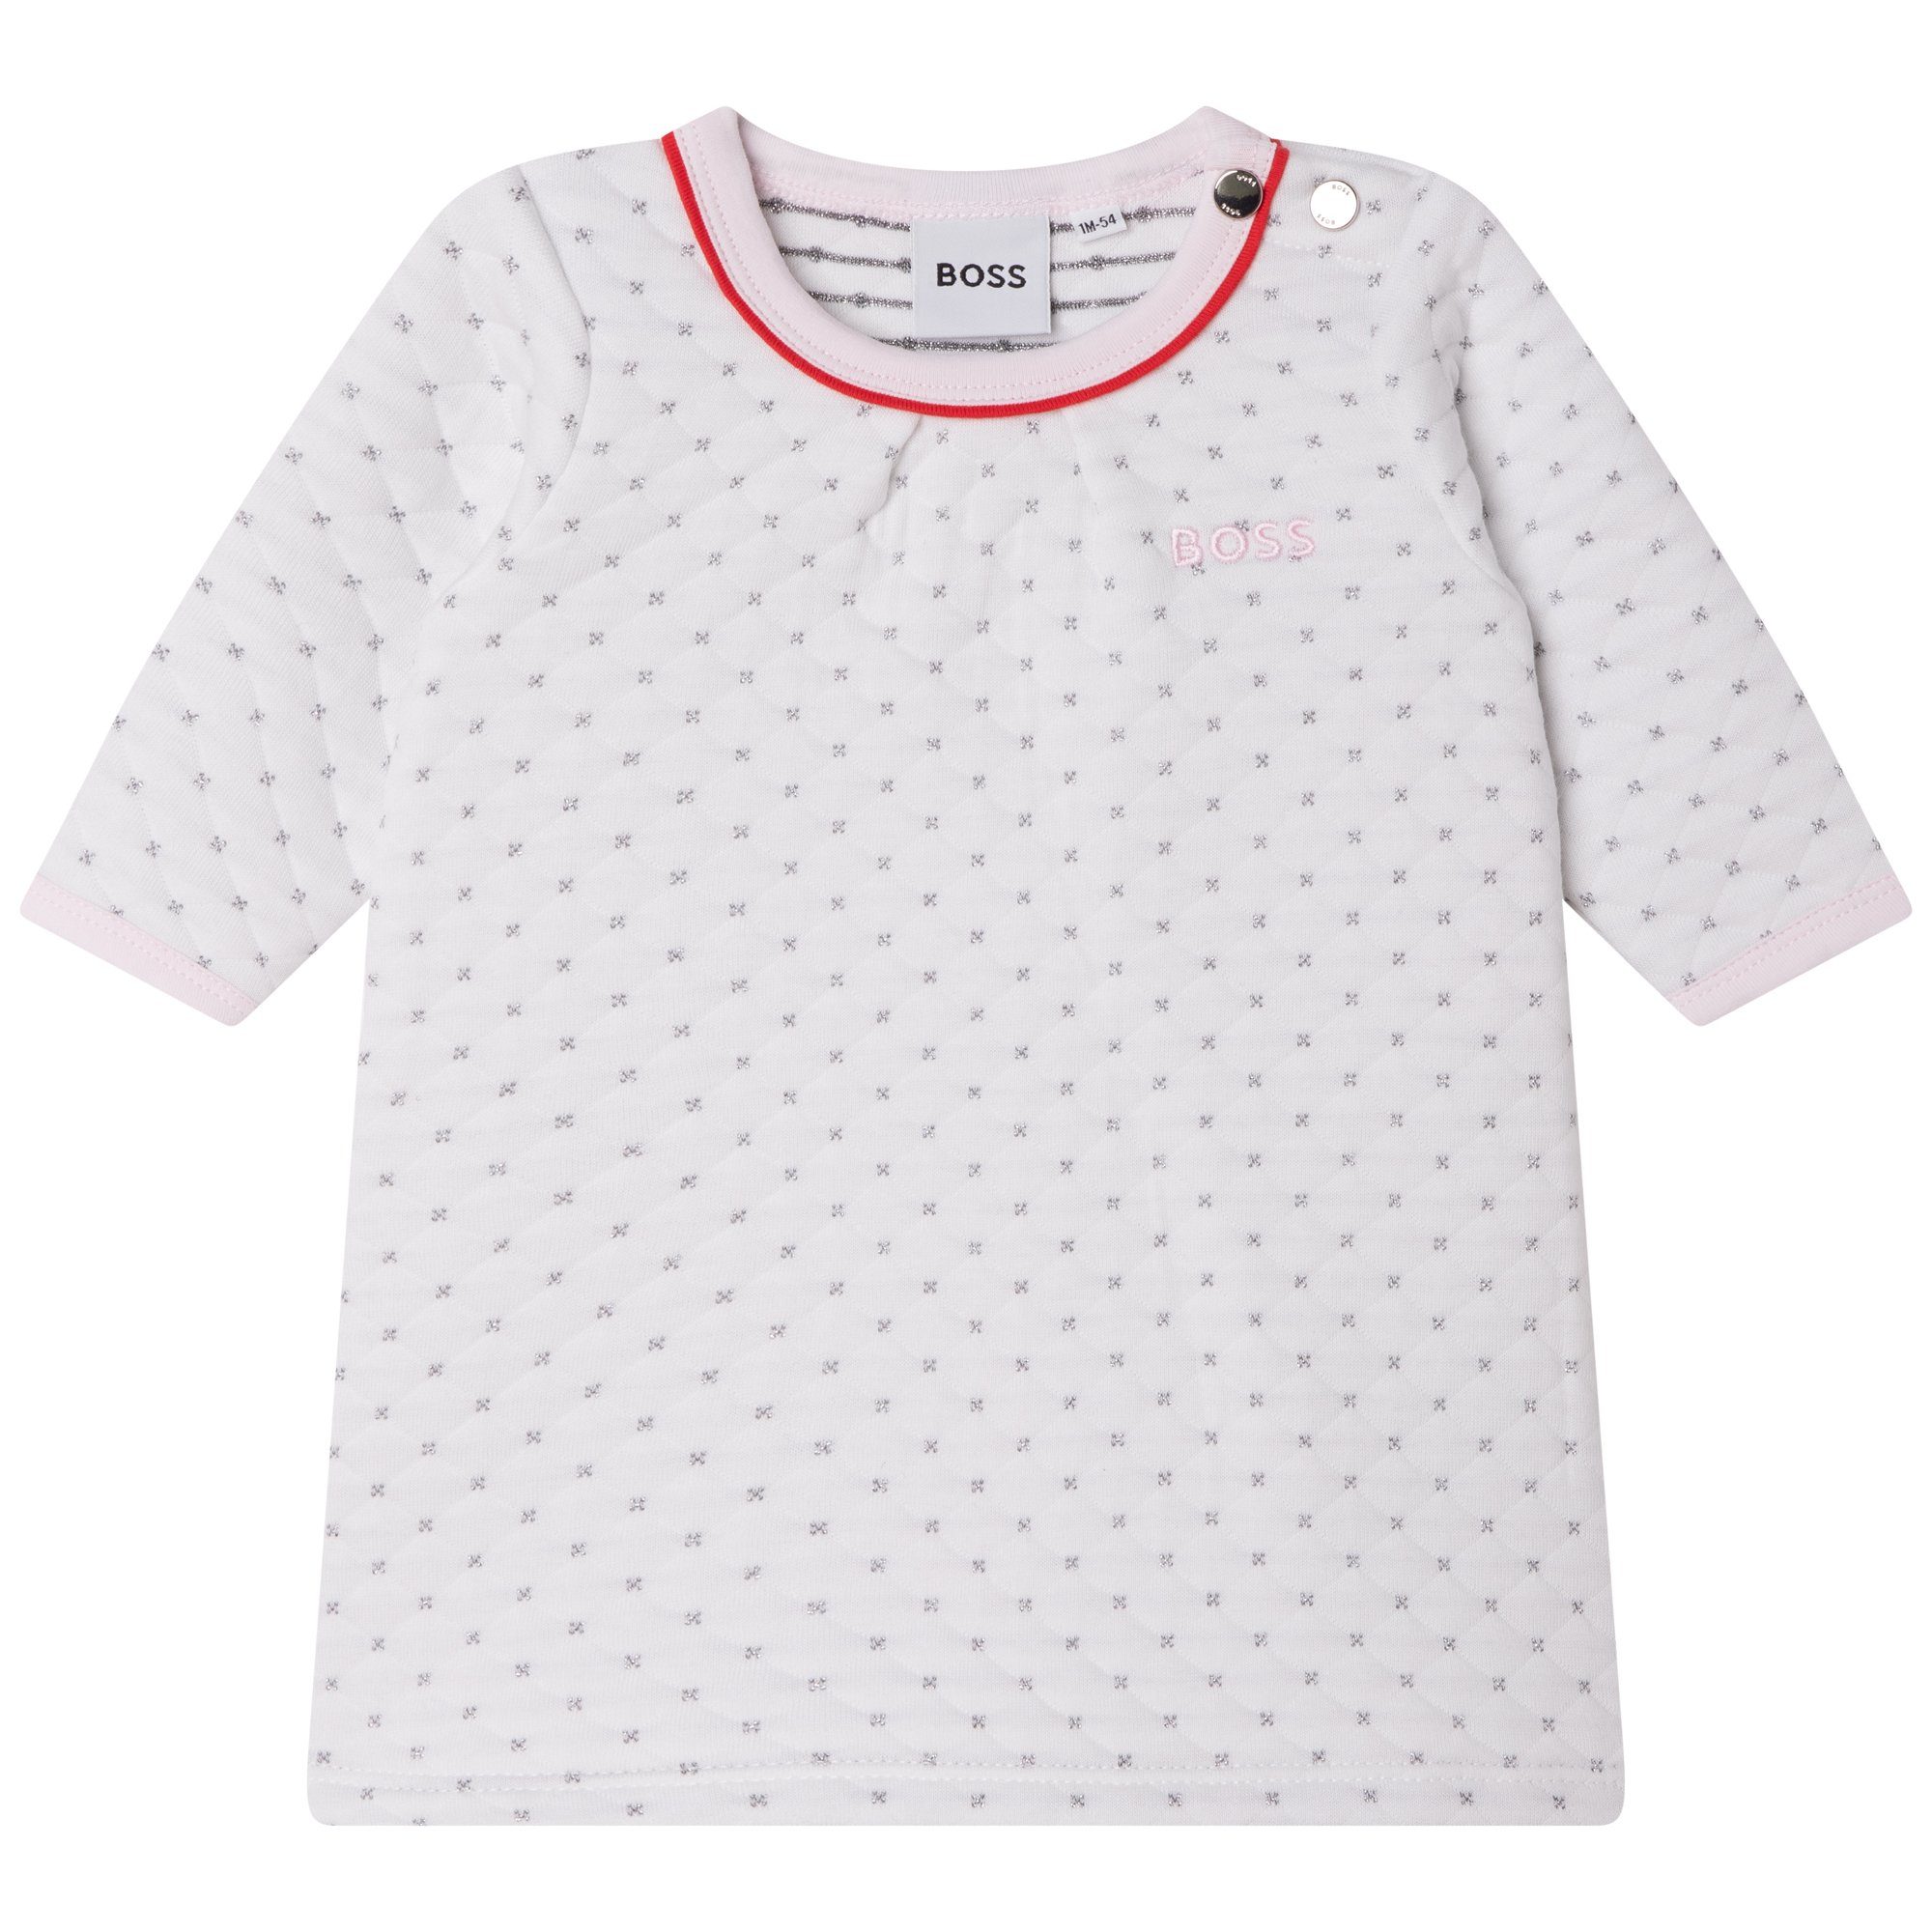 BOSS A-Linien-Kleid HUGO BOSS Baby Langarm Kleid weiß gesteppt mit Glitzer Logo Stickerei